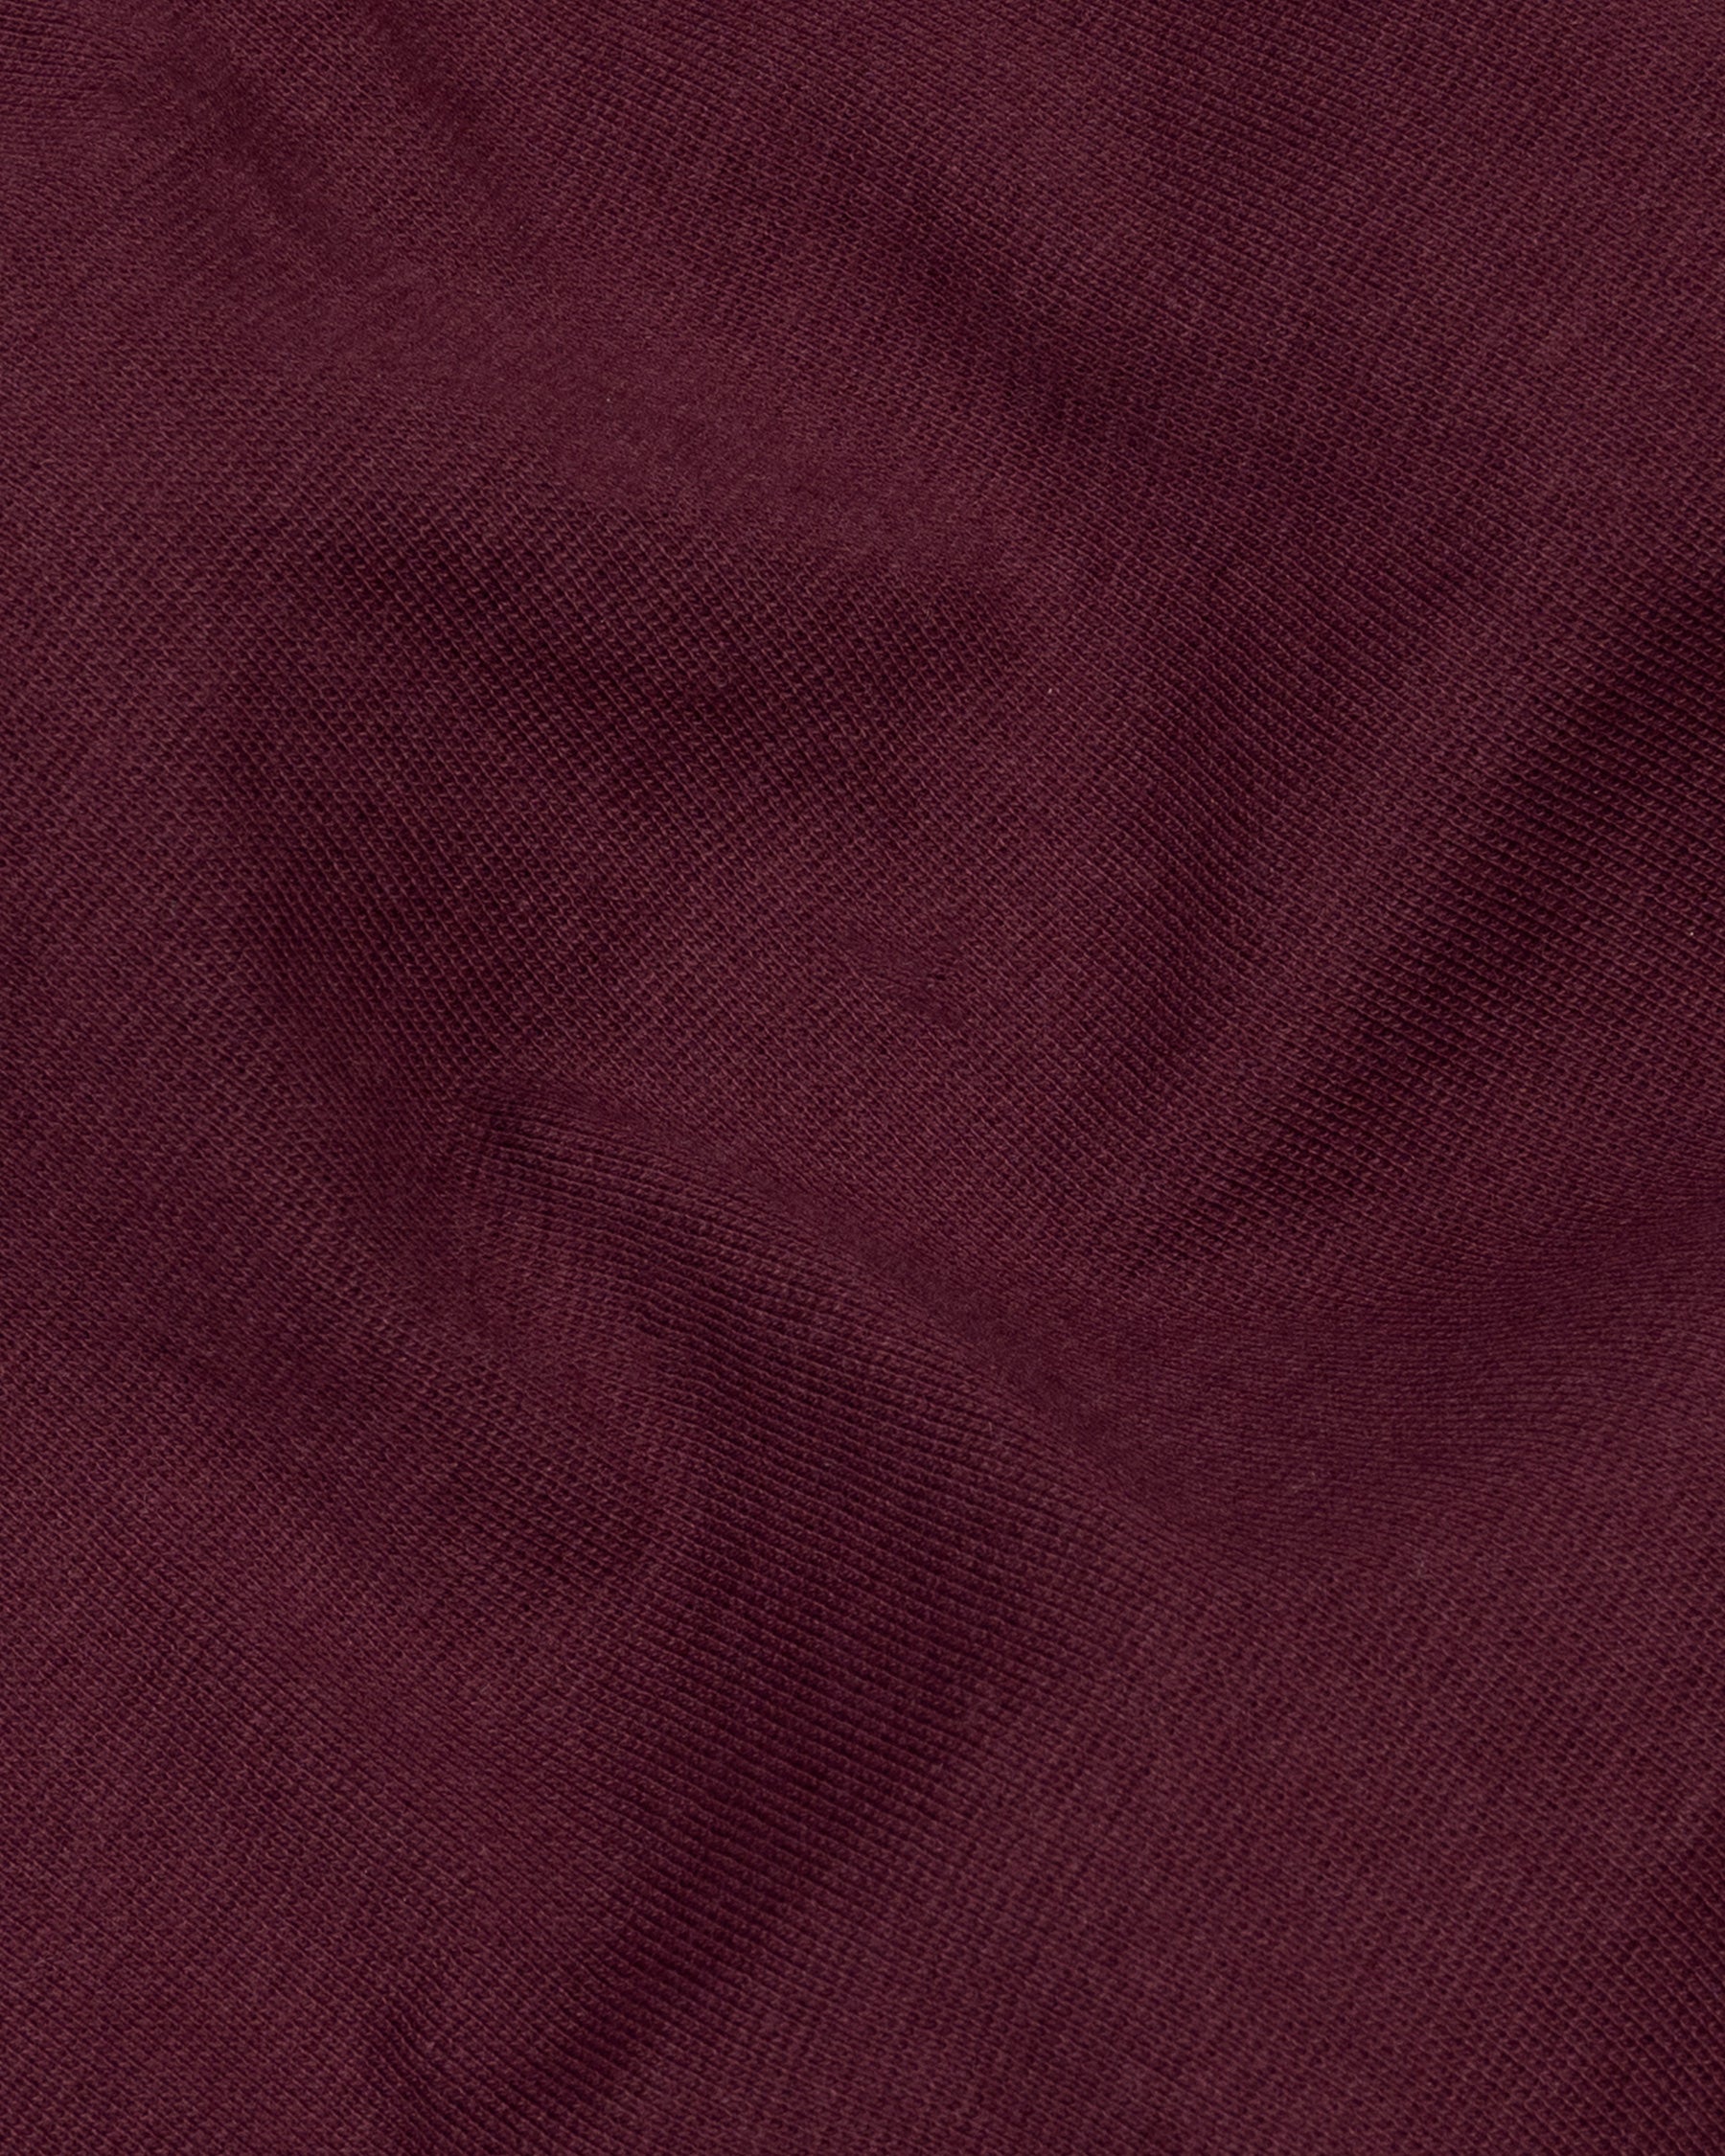 Bordeaux Full Sleeve Premium Cotton Jersey Sweatshirt TS475-S, TS475-M, TS475-L, TS475-XL, TS475-XXL